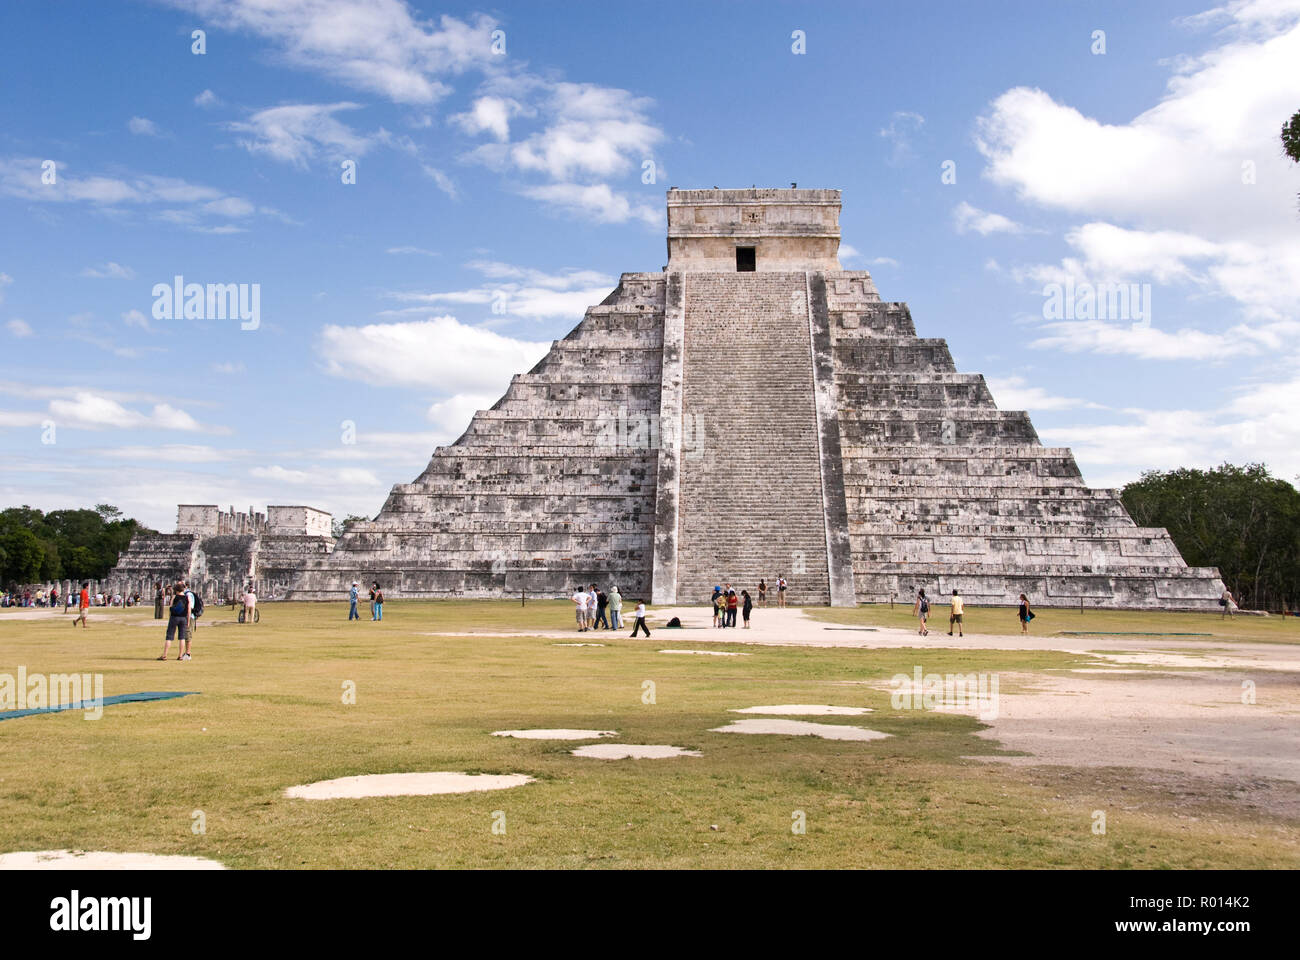 Les touristes visitent El Castillo, aussi connu comme le Temple de Kukulcan, une pyramide de Chichen Itza, au Mexique. Banque D'Images